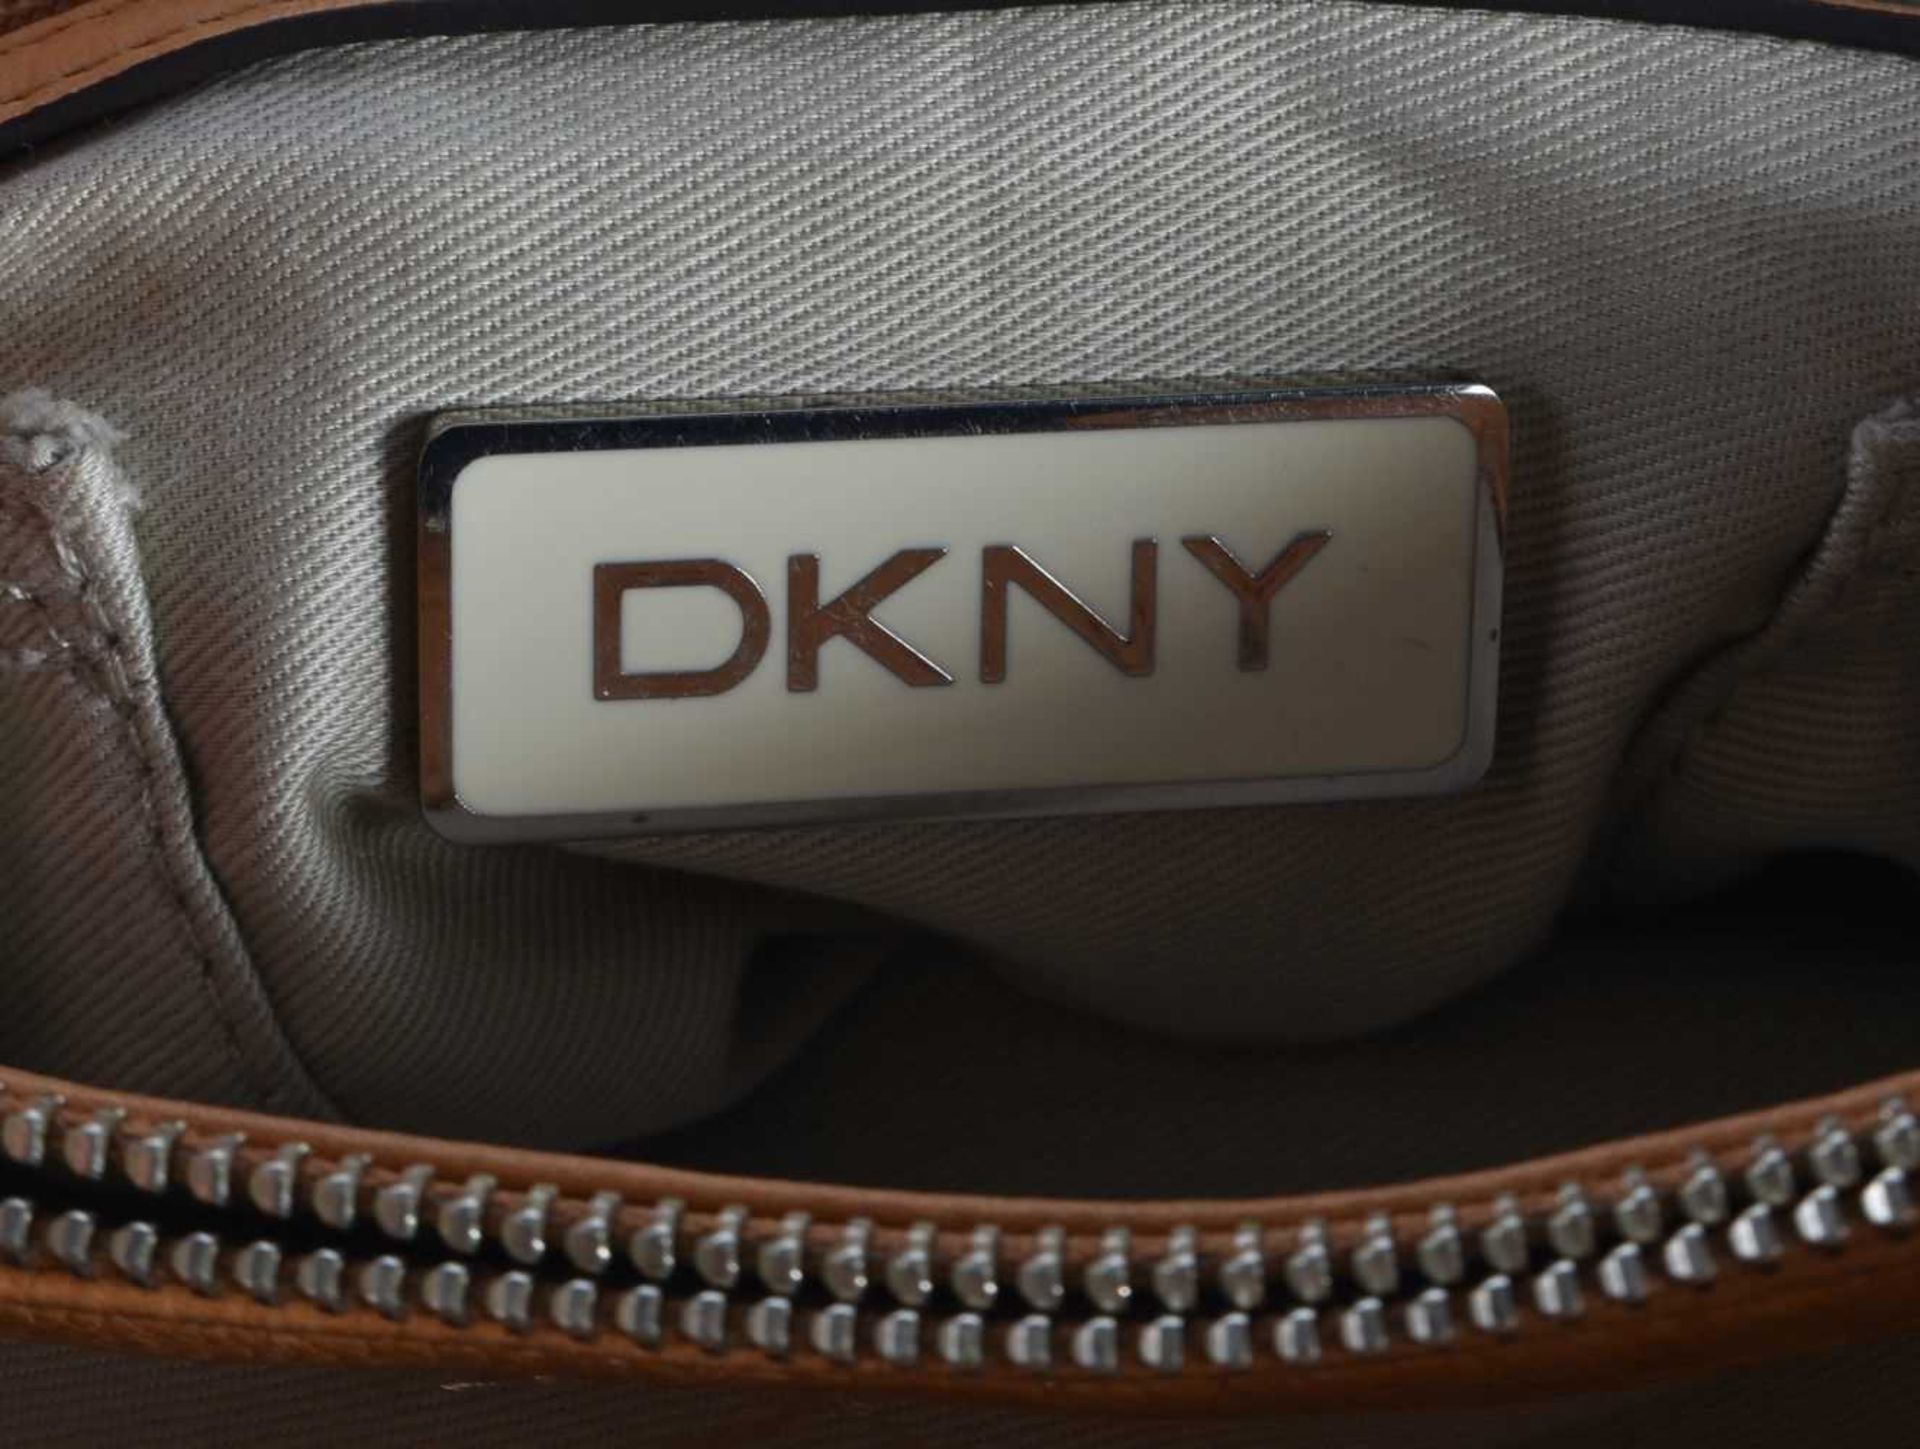 A DKNY HANDBAG. 44 cm wide. - Image 4 of 5